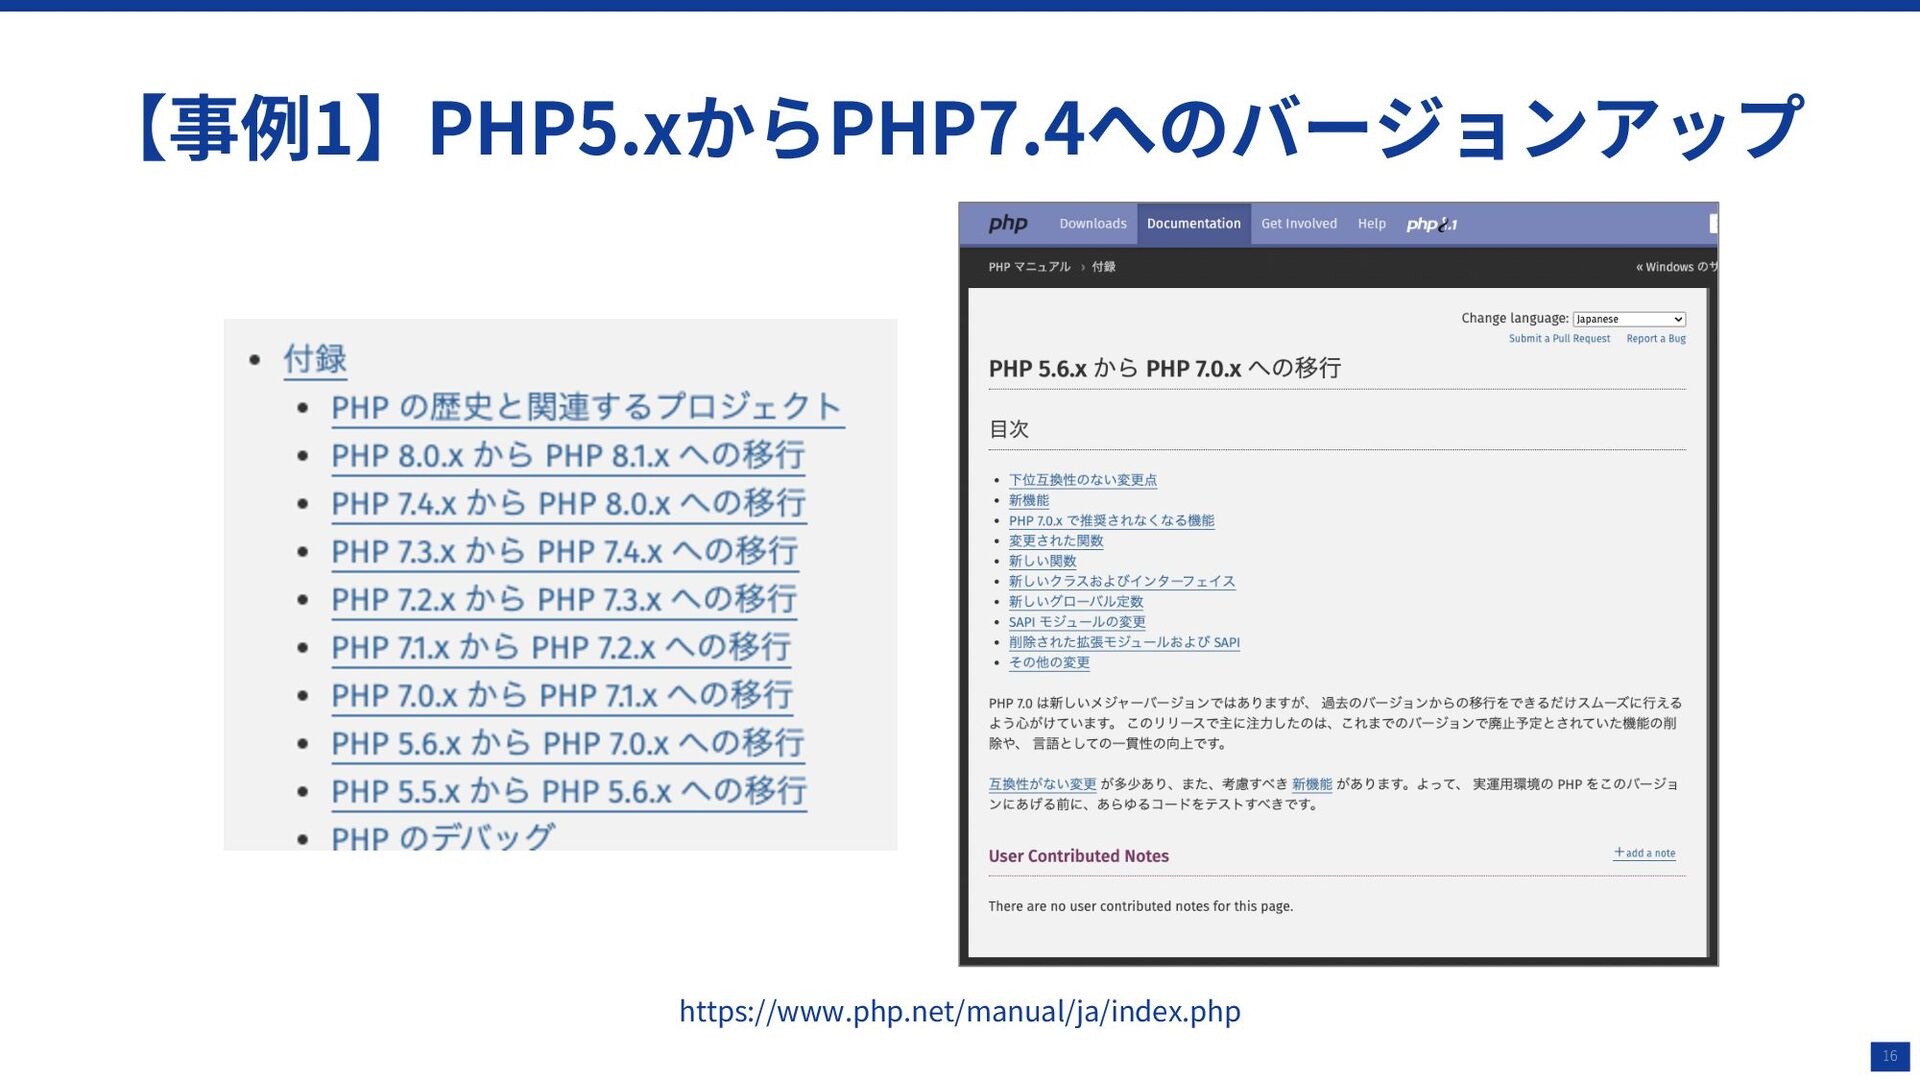 PHPバージョンアップのための依存ライブラリとの付き合い方